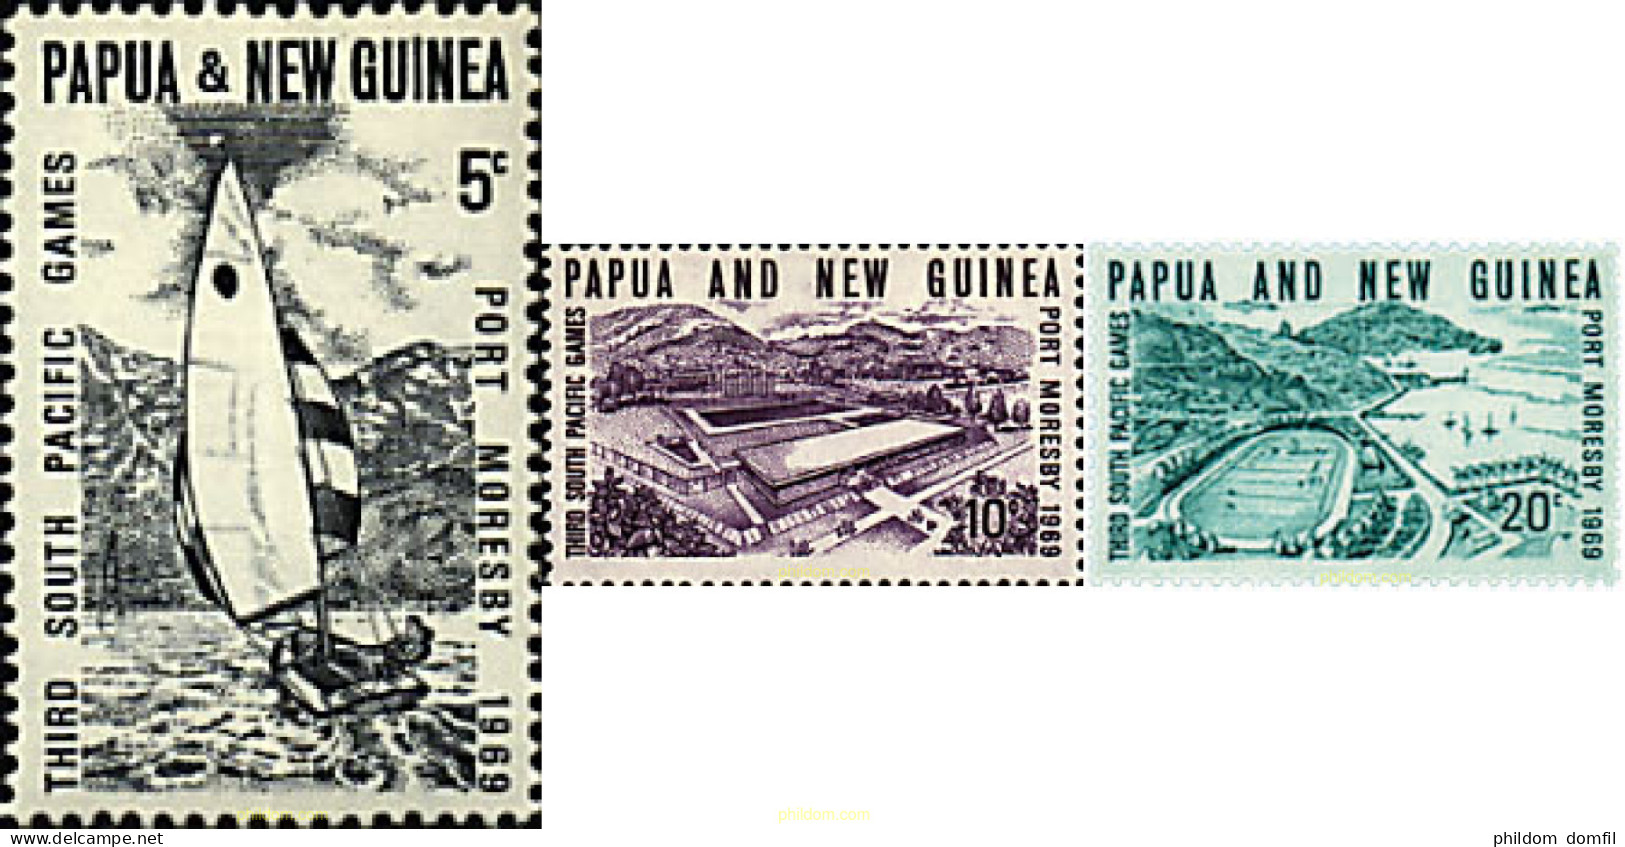 44969 MNH PAPUA NUEVA GUINEA 1969 3 JUEGOS DEL PACIFICO SUR - Papua New Guinea